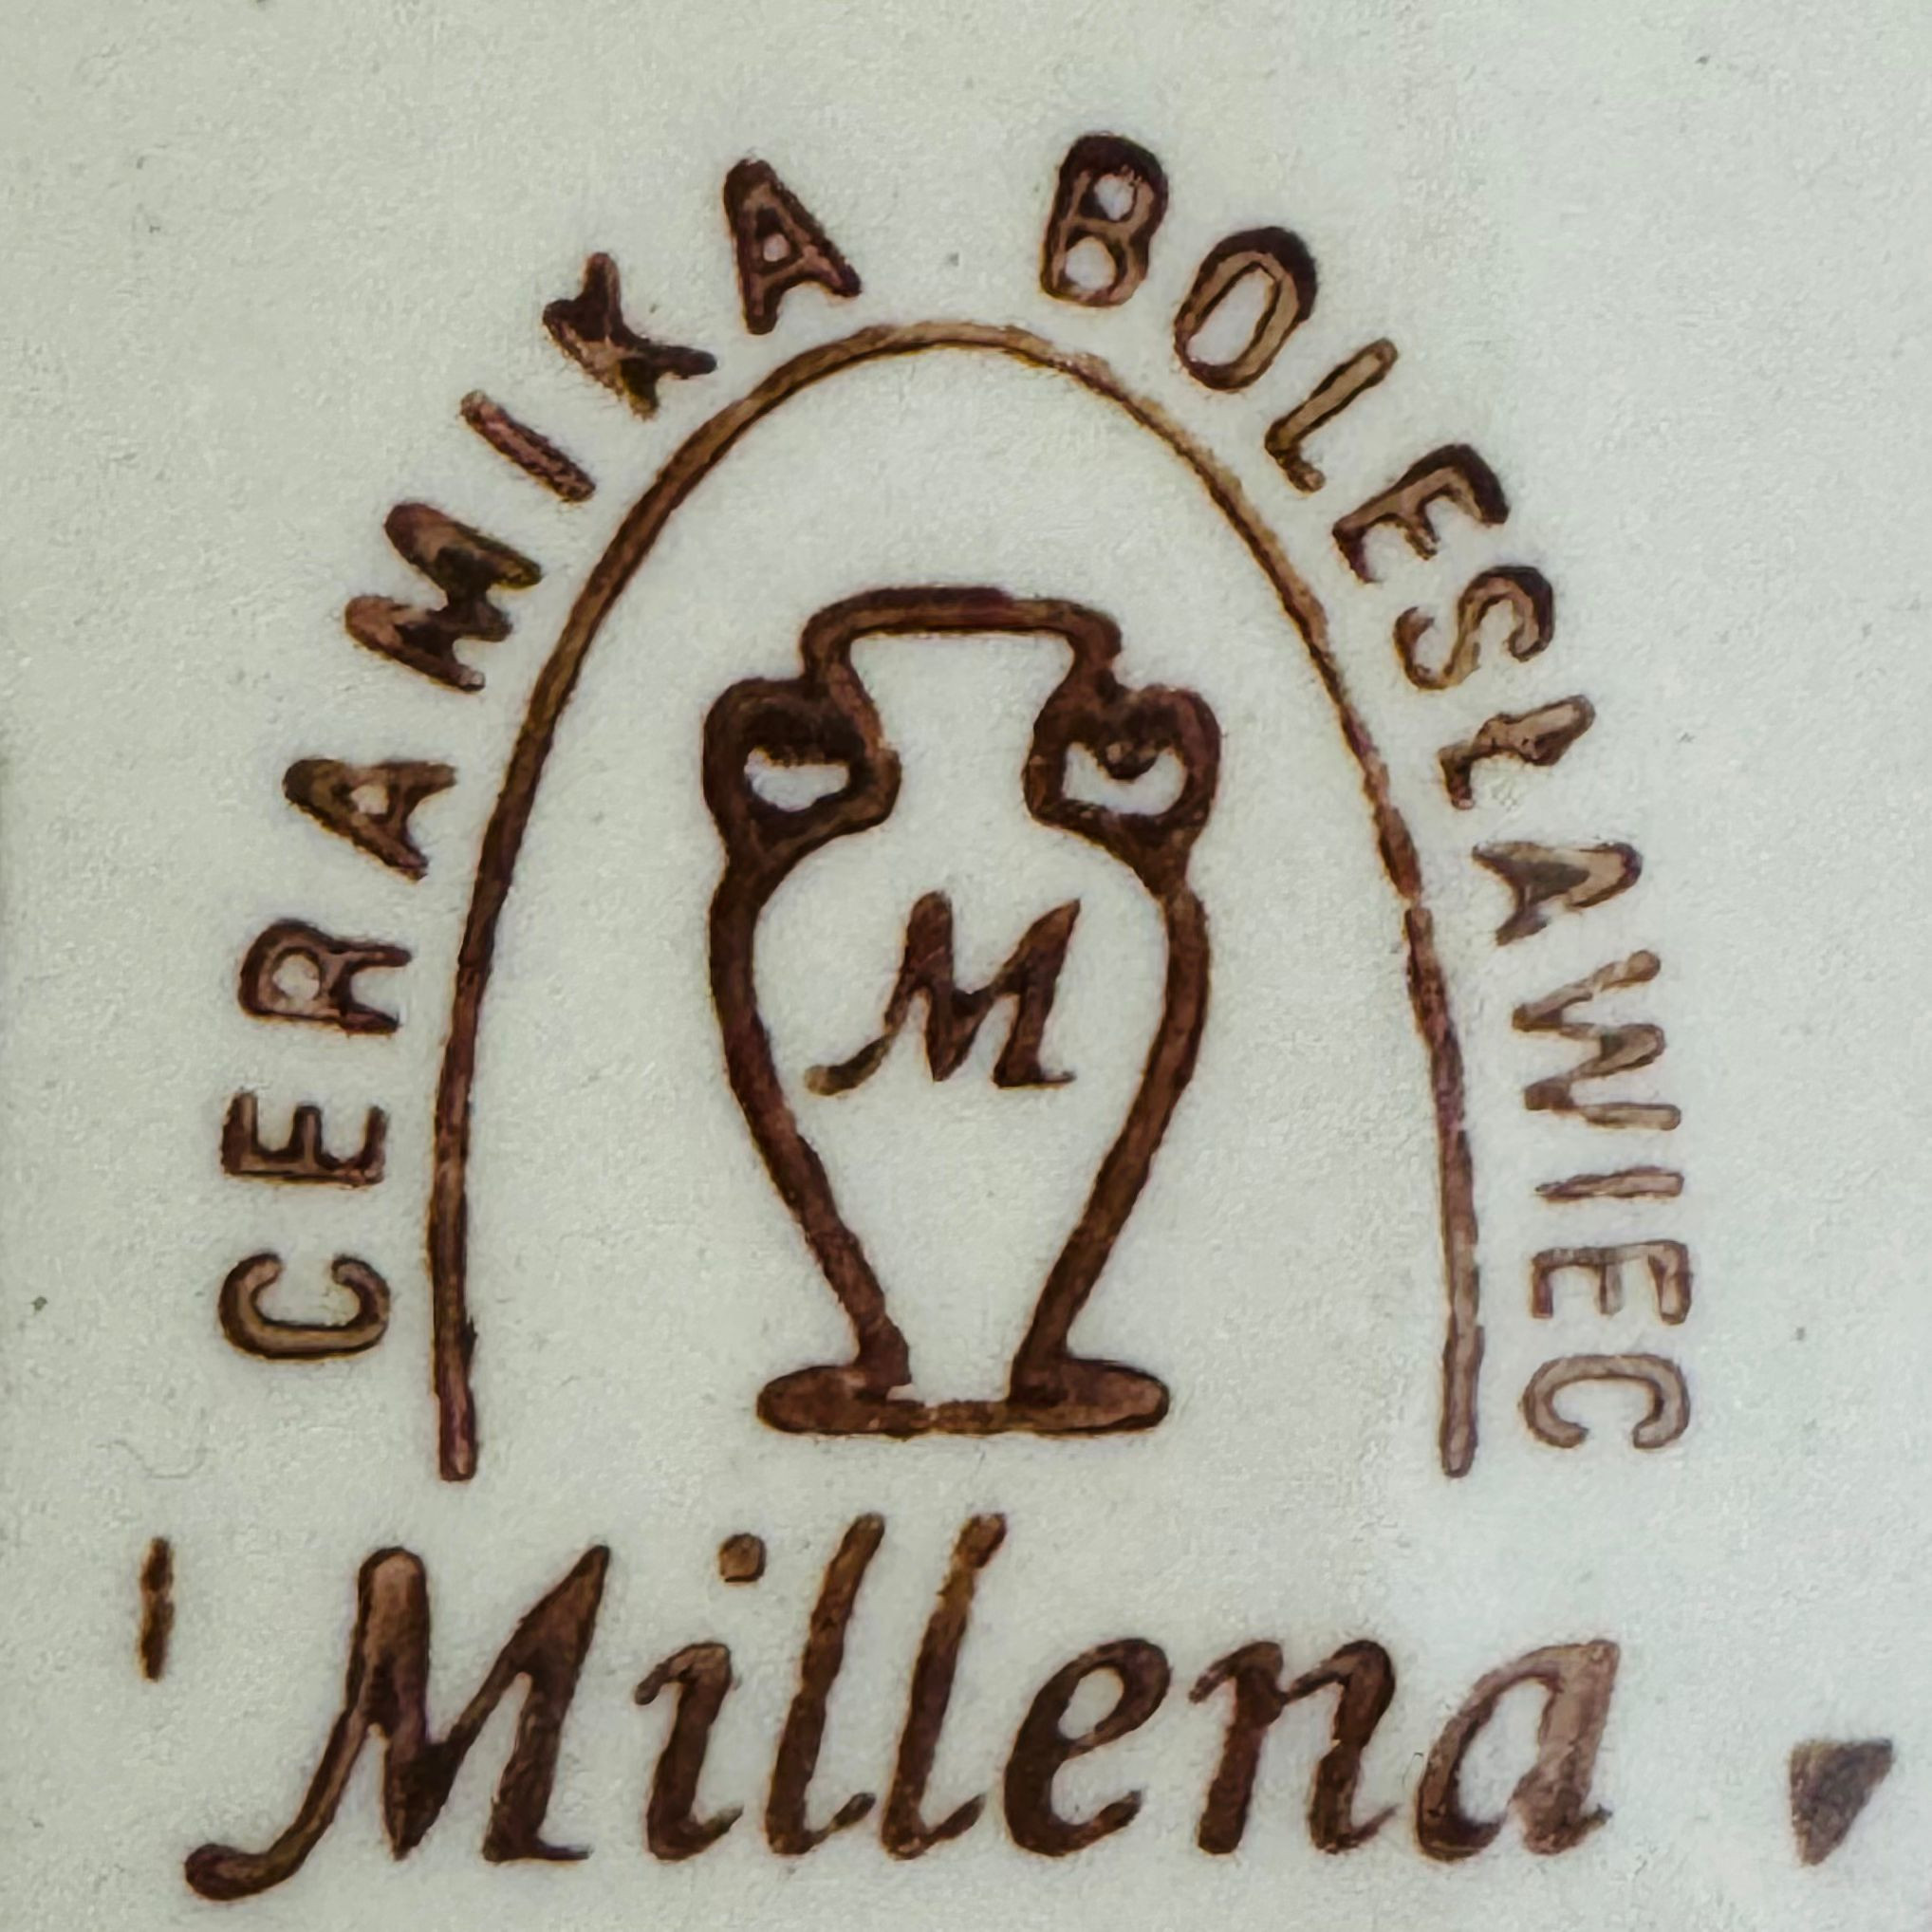 Ceramika "Millena"